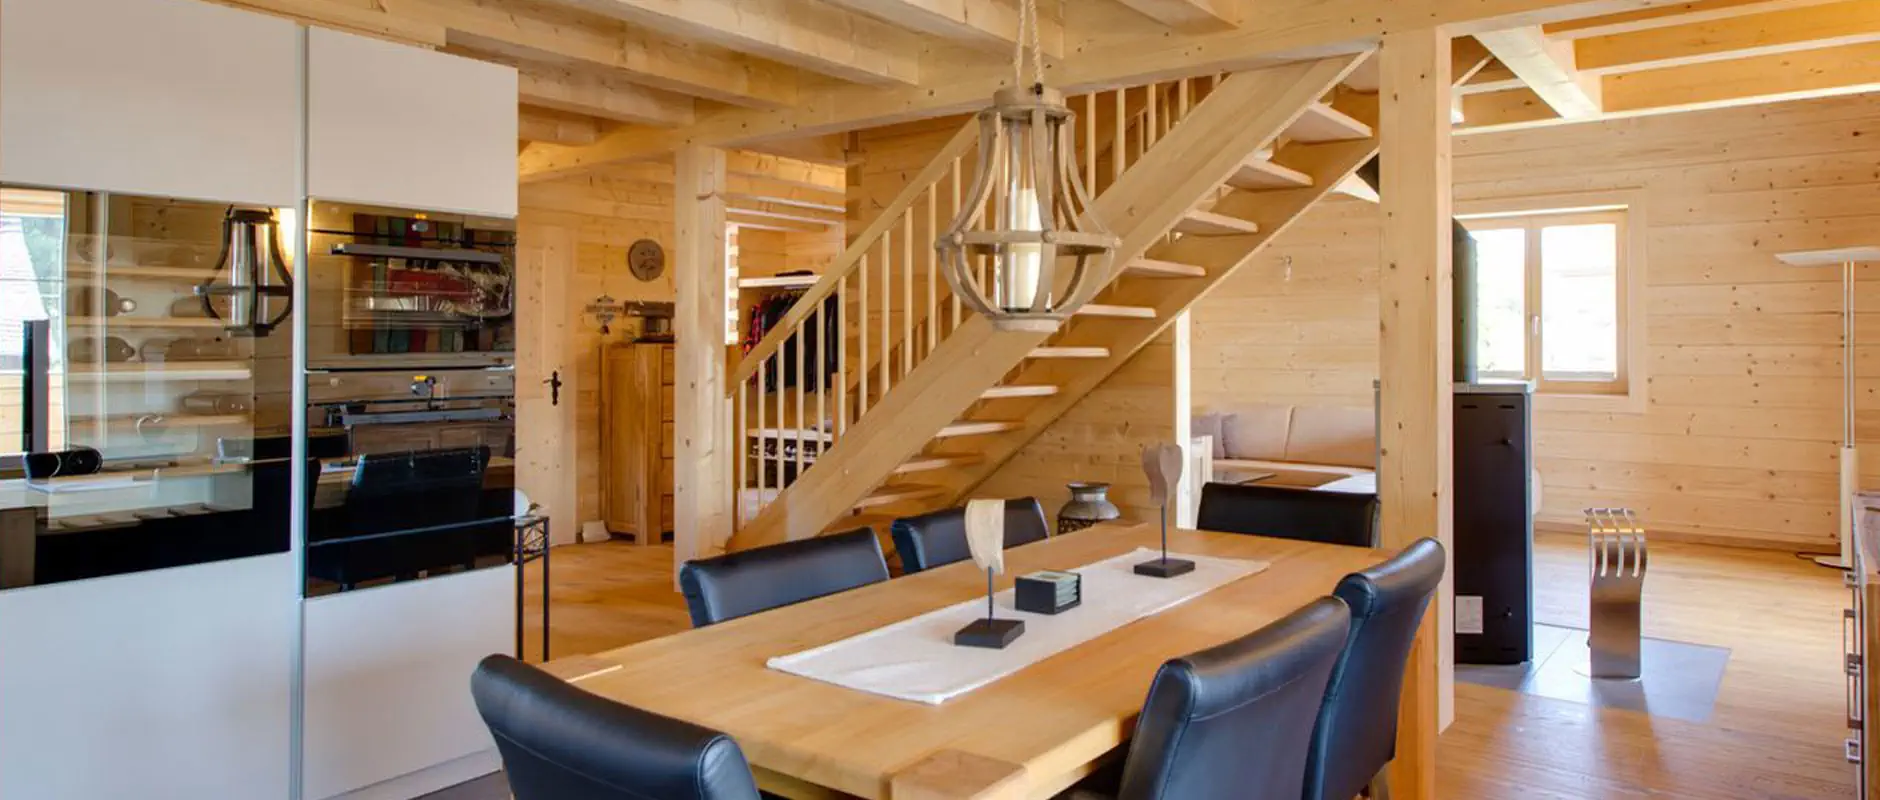 Wohnklima im Holz Blockhaus Holz verströmt eine einladend-heimelige Atmosphäre und sorgt für behaglichen Wohnkomfort